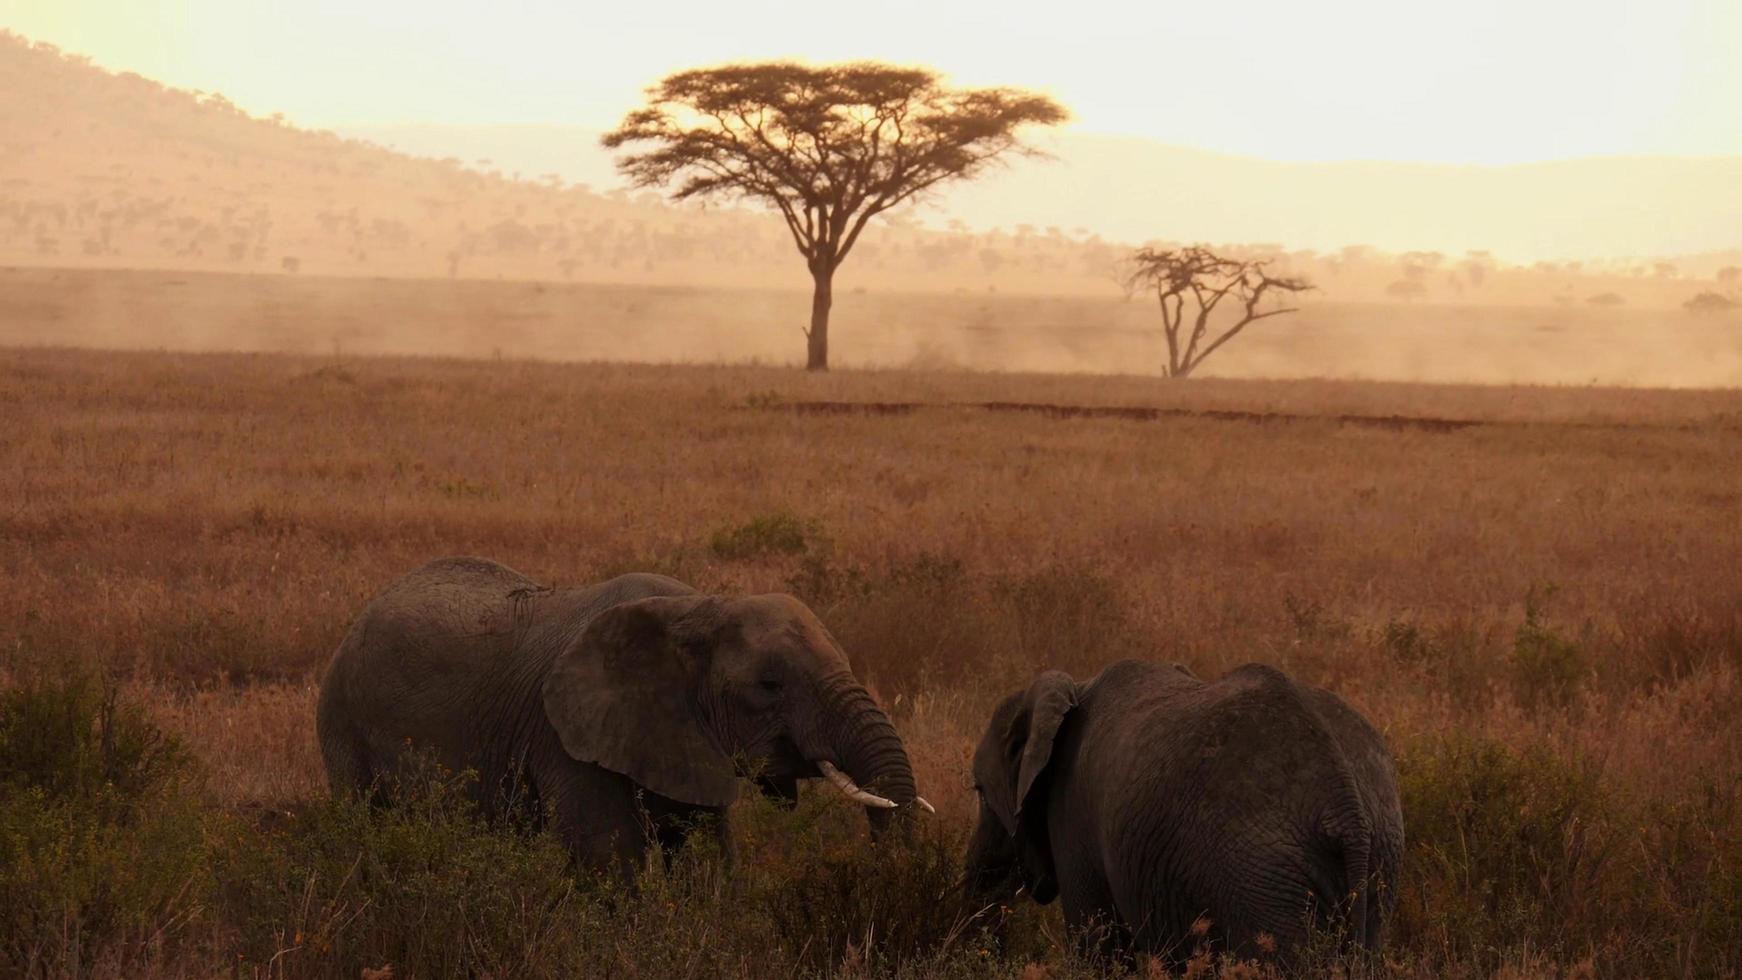 Mère éléphant d'Afrique avec un bébé éléphant mangeant la végétation de la savane africaine pendant le coucher du soleil photo